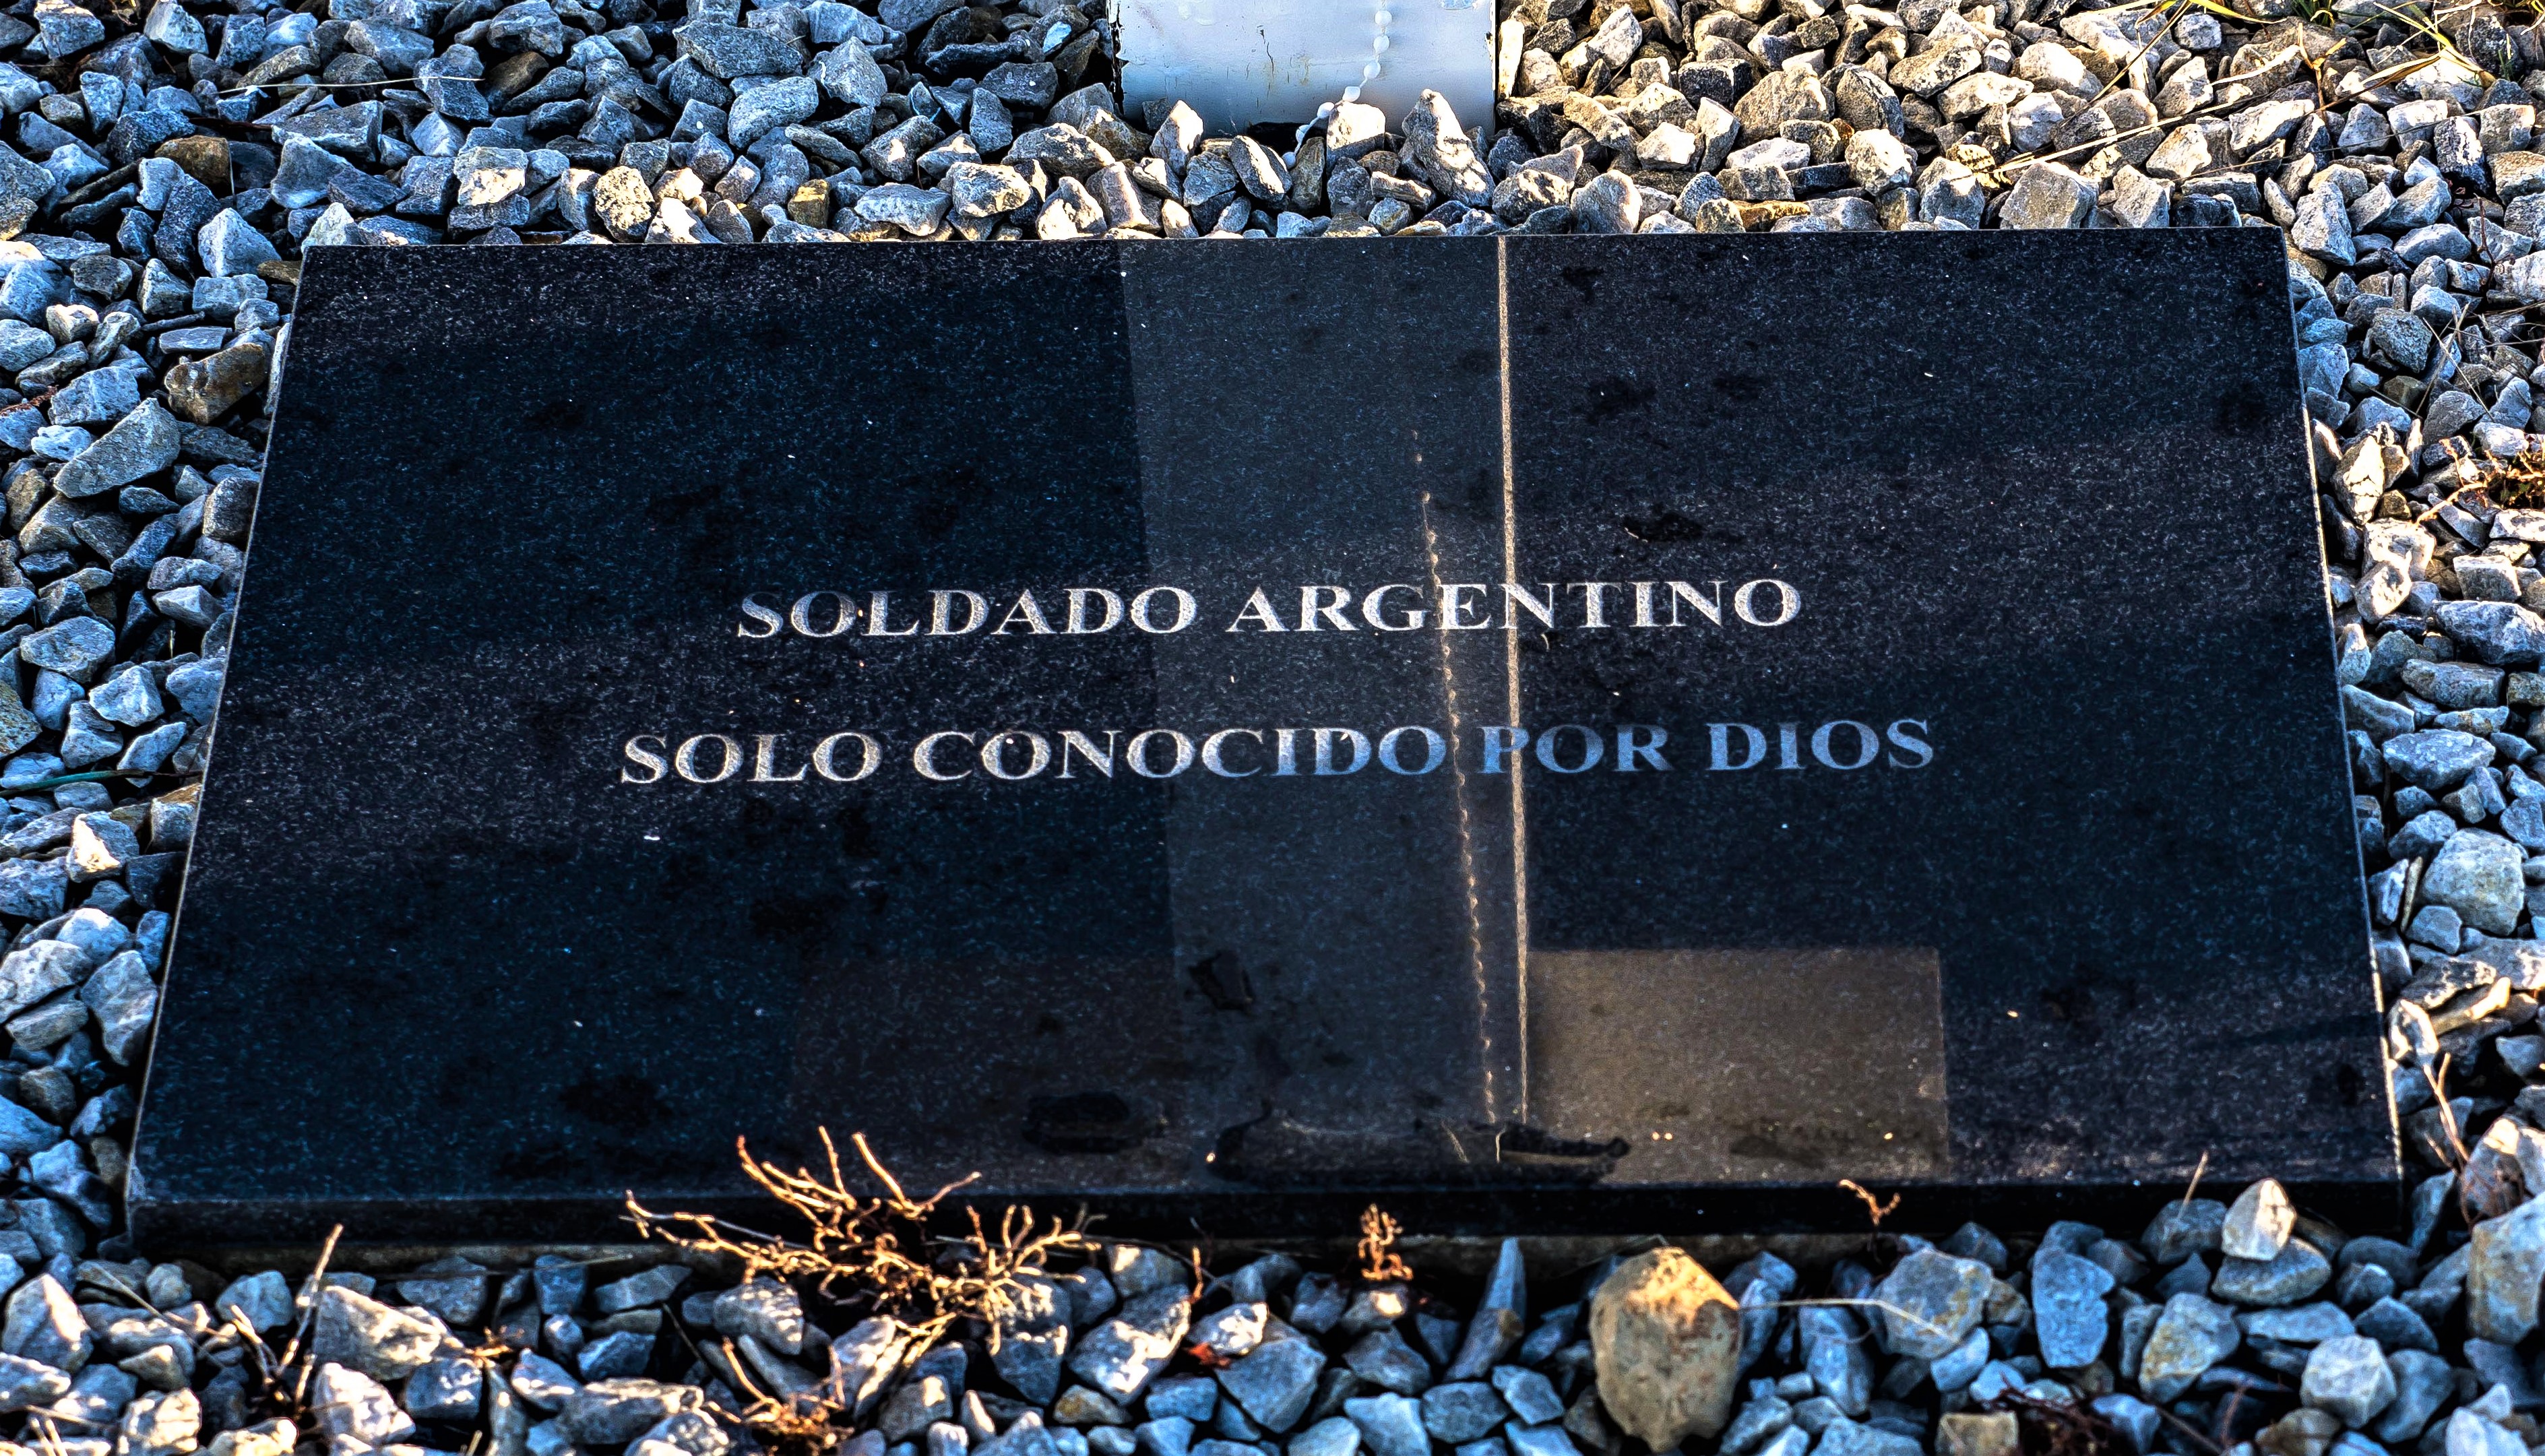 Familiares de caídos en Malvinas solicitaron a la justicia detener el  reparto de placas del cementerio de Darwin con la leyenda “Soldado  Argentino Solo conocido por Dios” – AgendaMalvinas